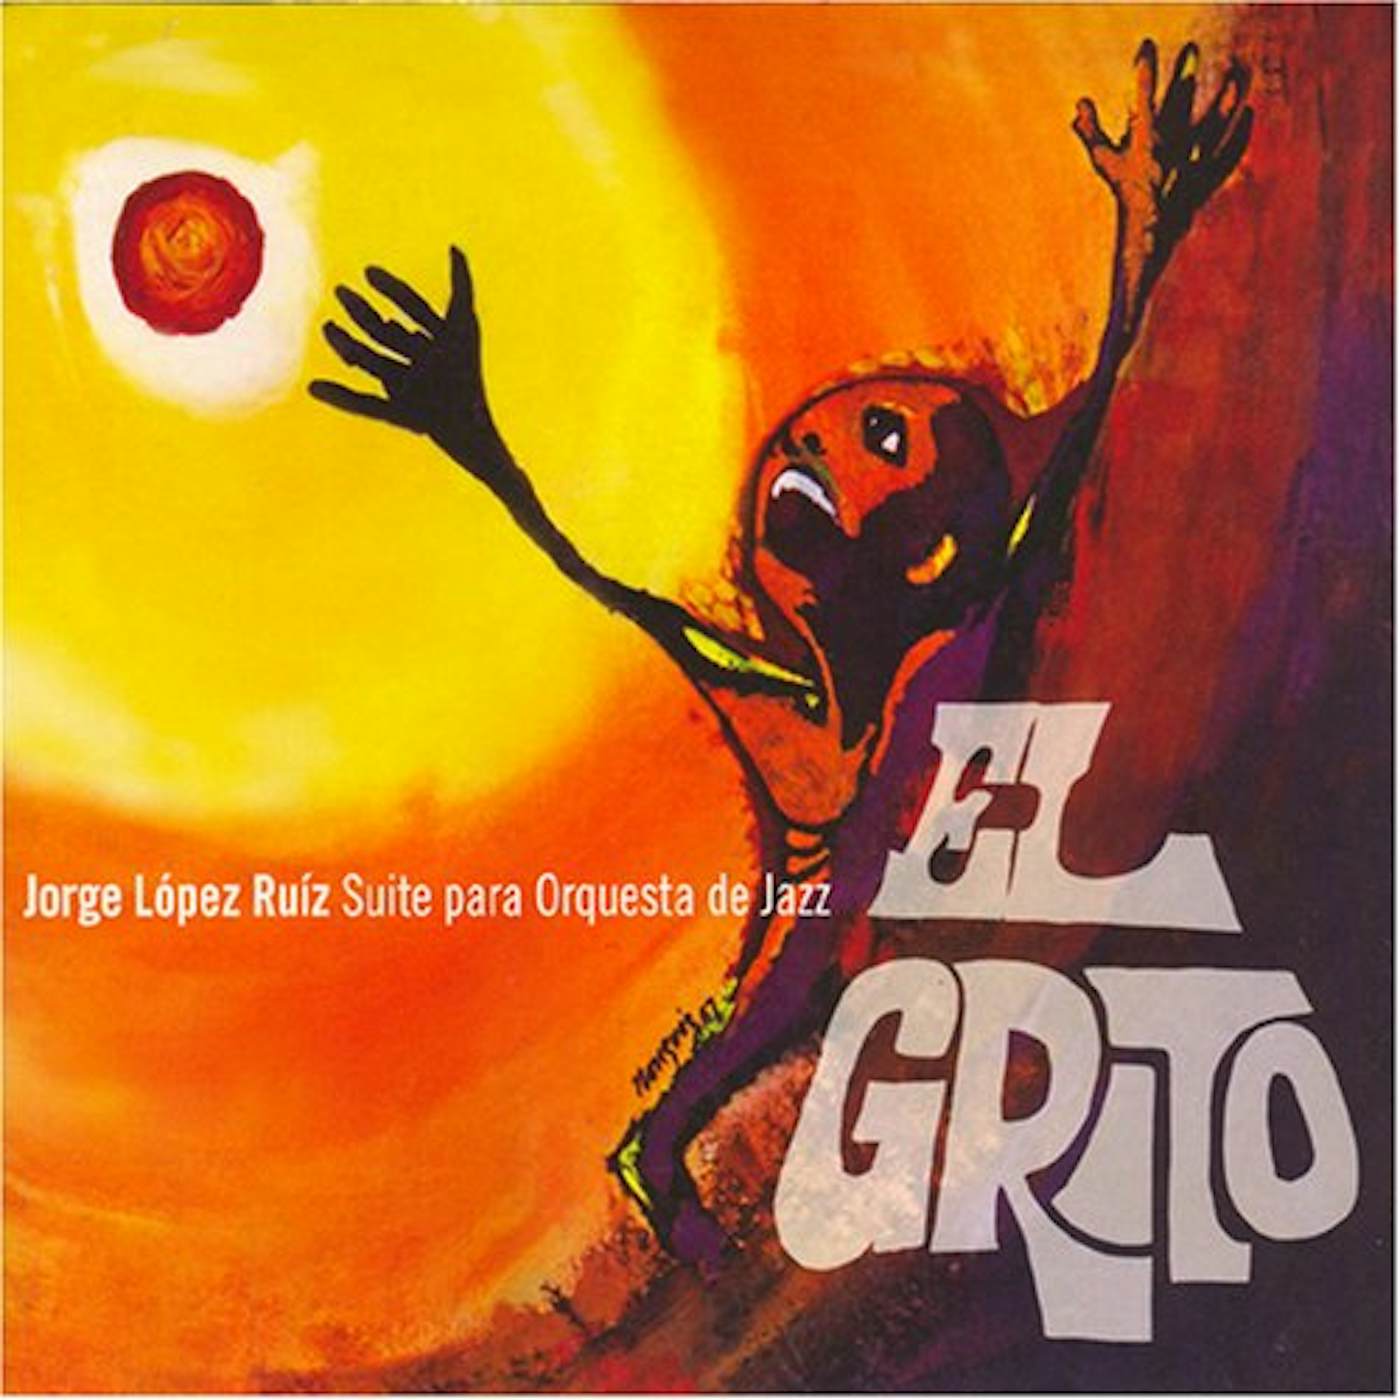 EL GRITO: Jorge López Ruiz CD